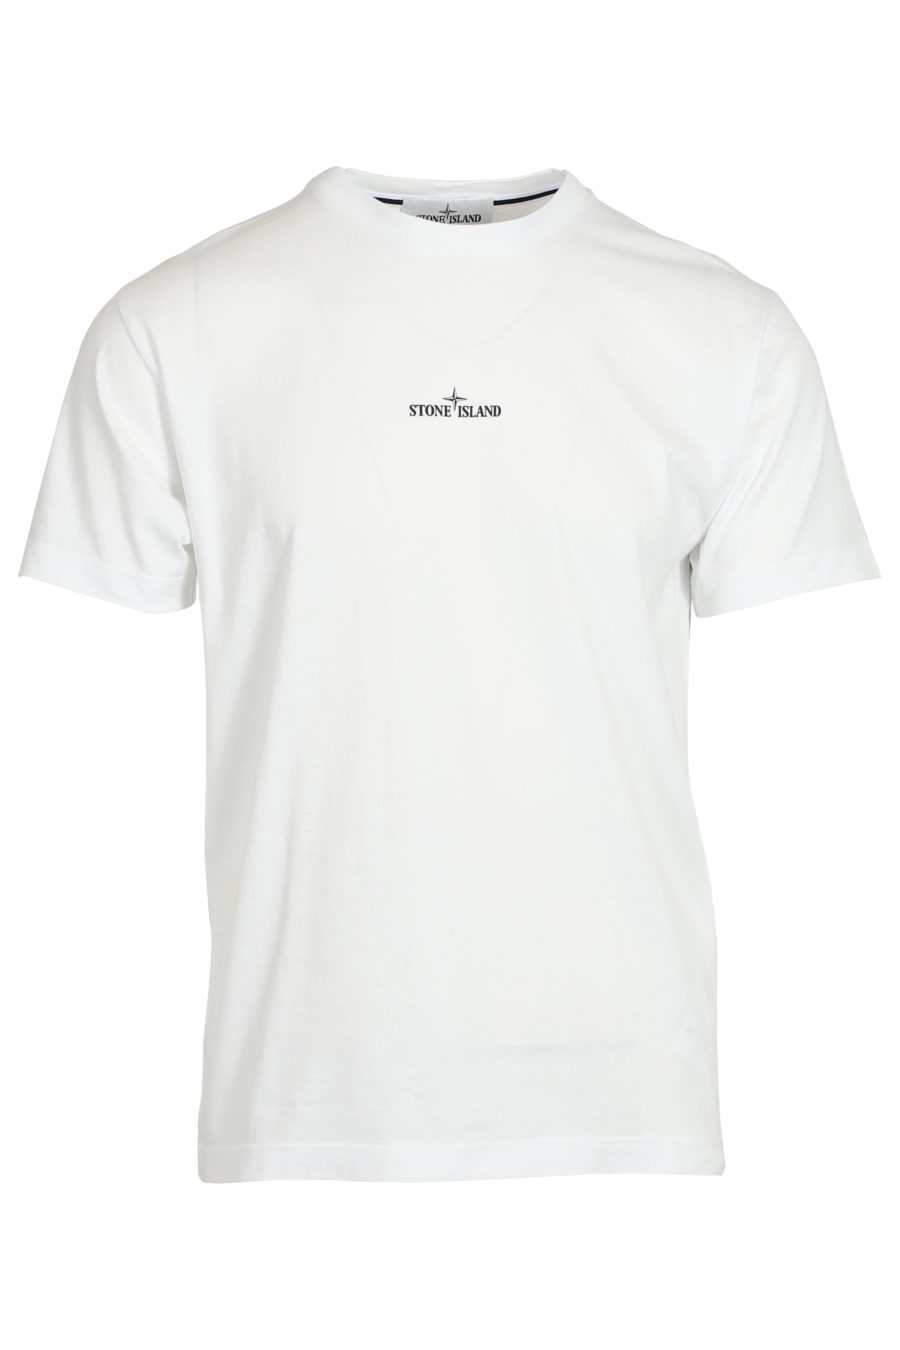 Camiseta blanca con logo grande detrás - IMG 3701